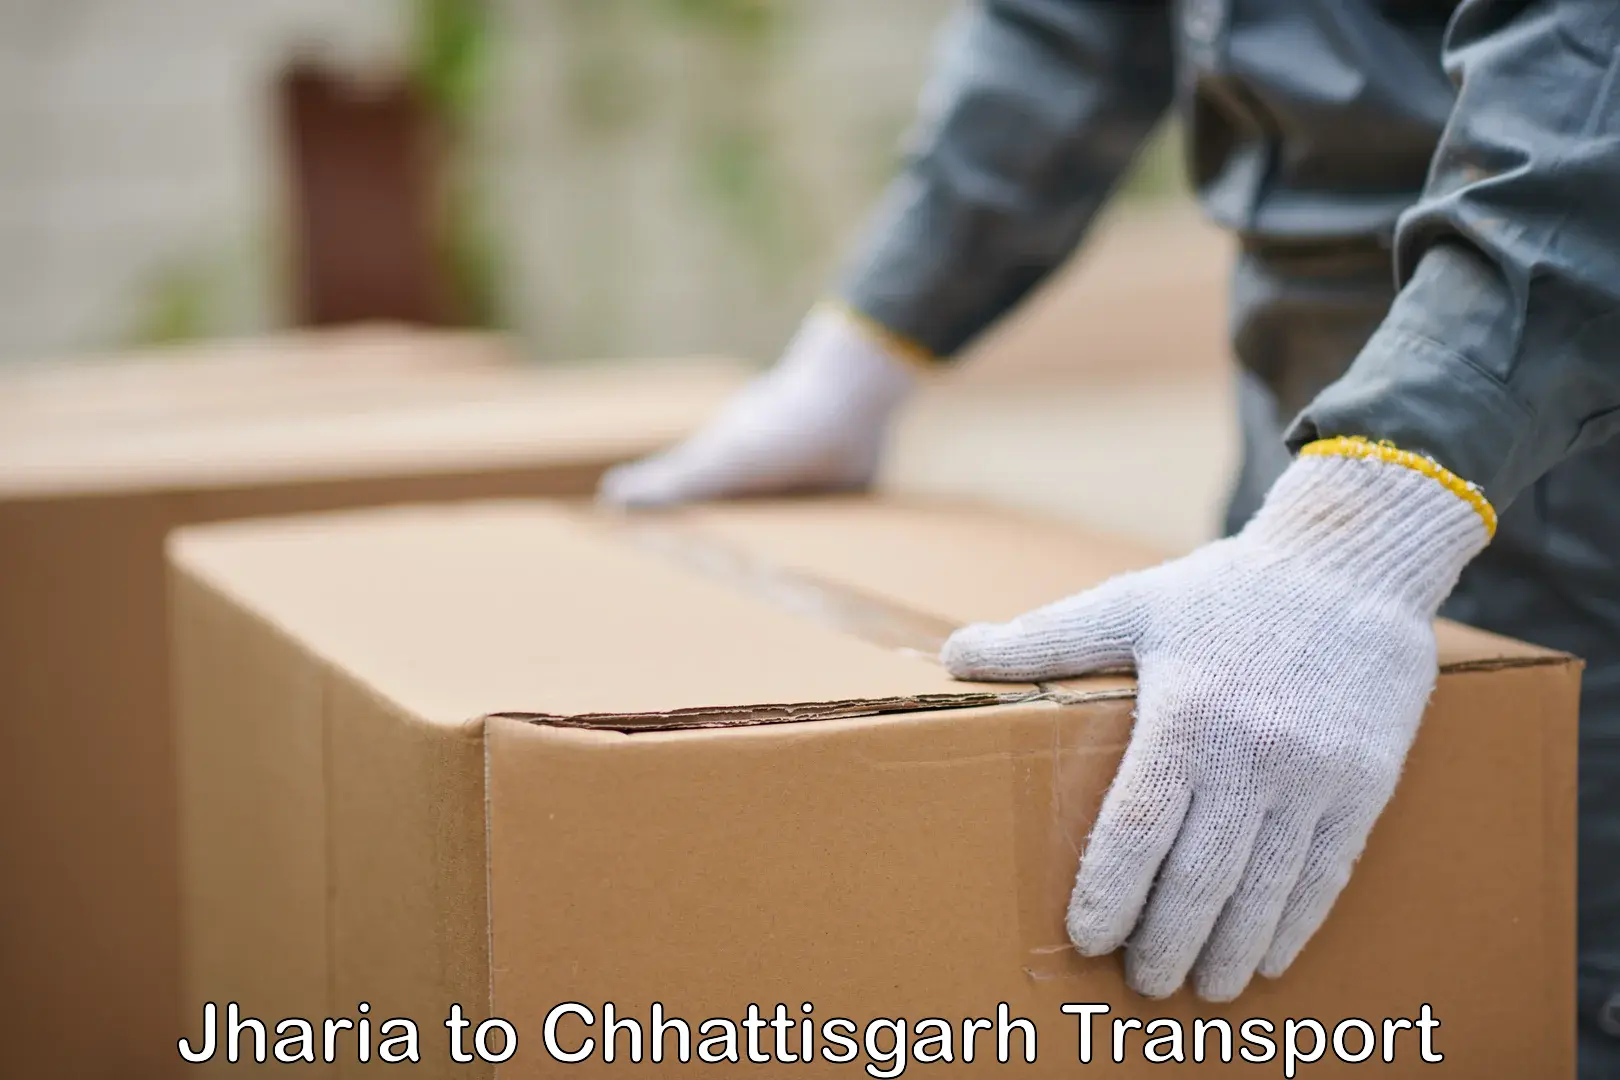 Domestic transport services Jharia to Chhattisgarh